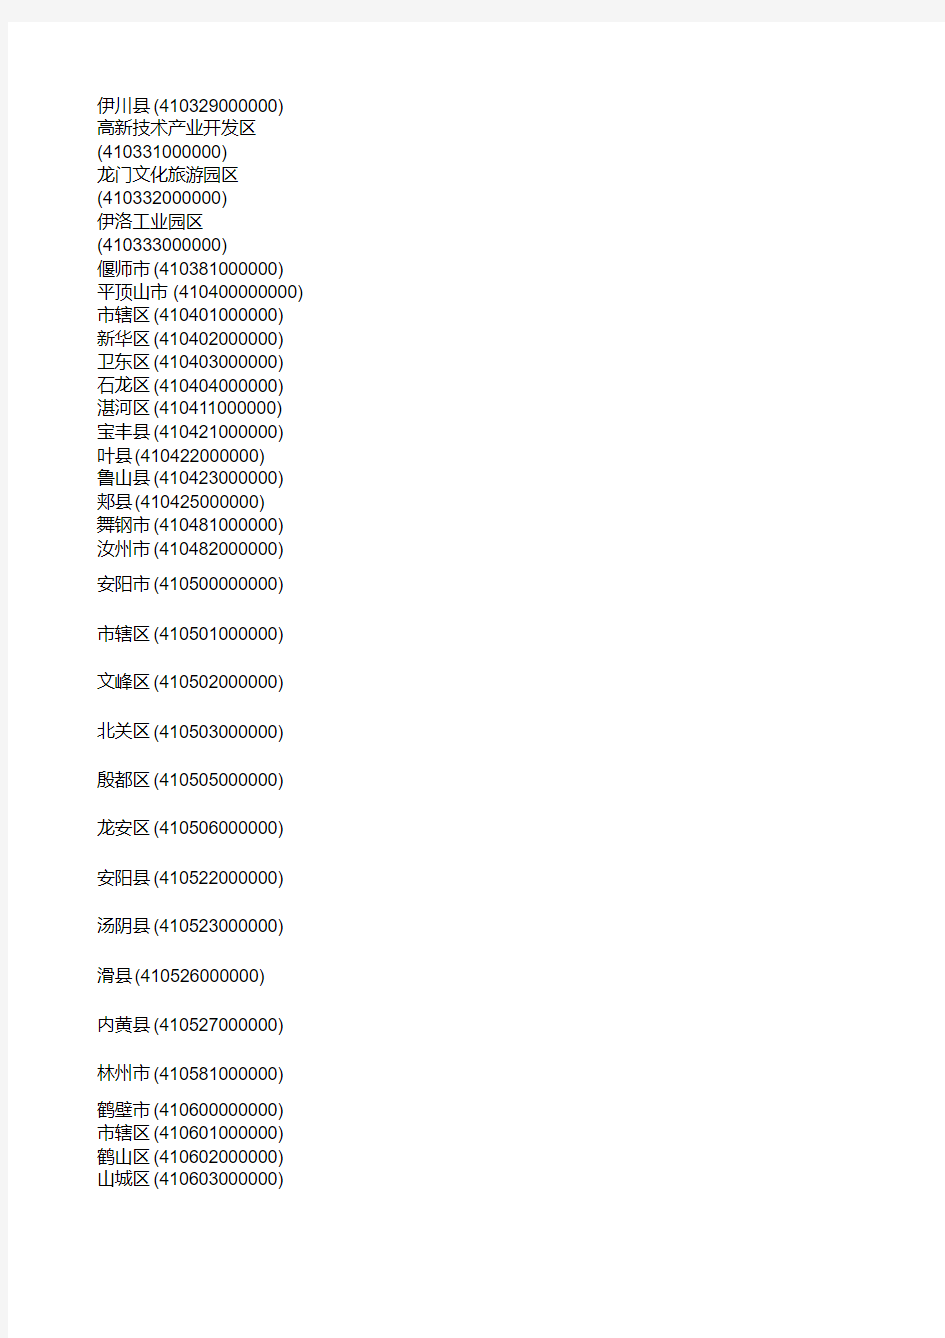 河南省行政区划代码